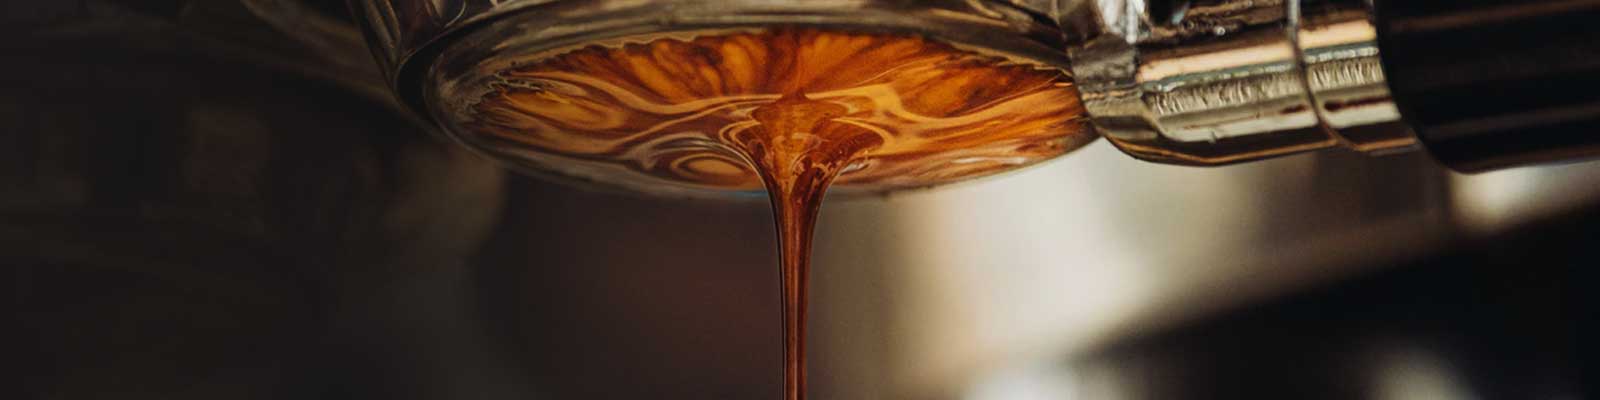 Unser Espresso - feine Crema & aromatischer Geschmack | Emma Spezialitätenkaffee